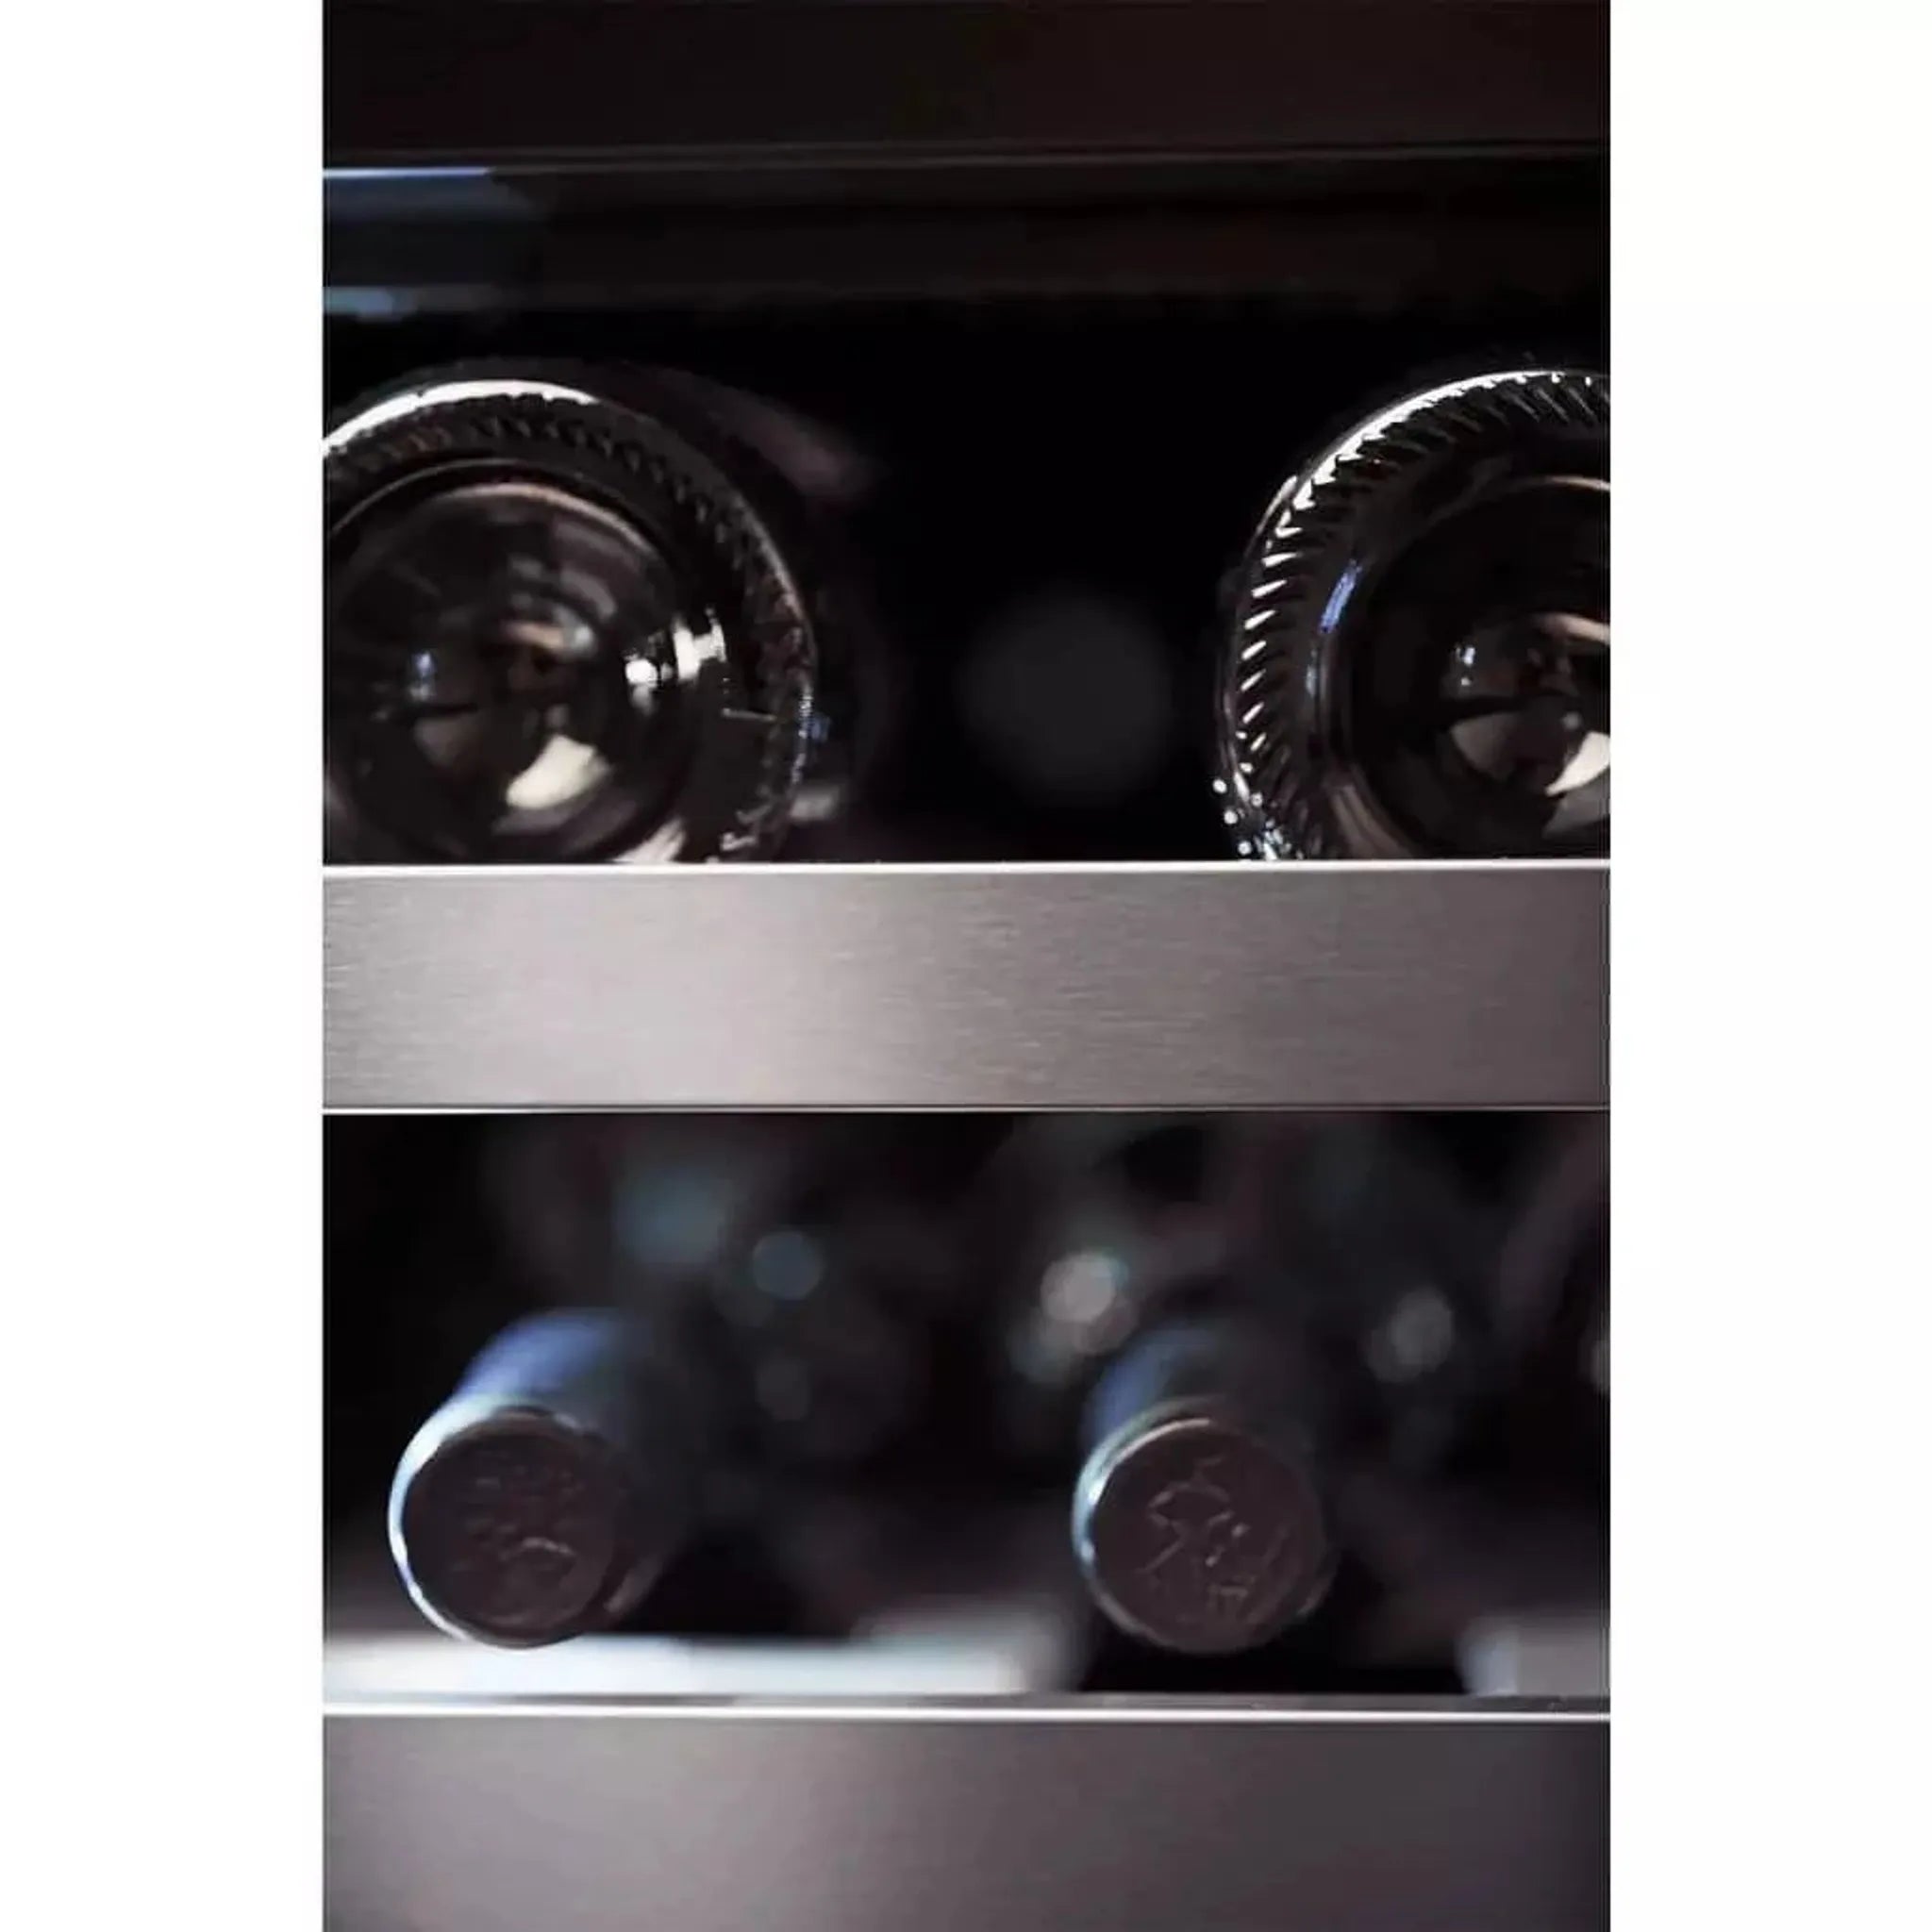 Cave à vin encastrable - WineCave 700 50D Modern